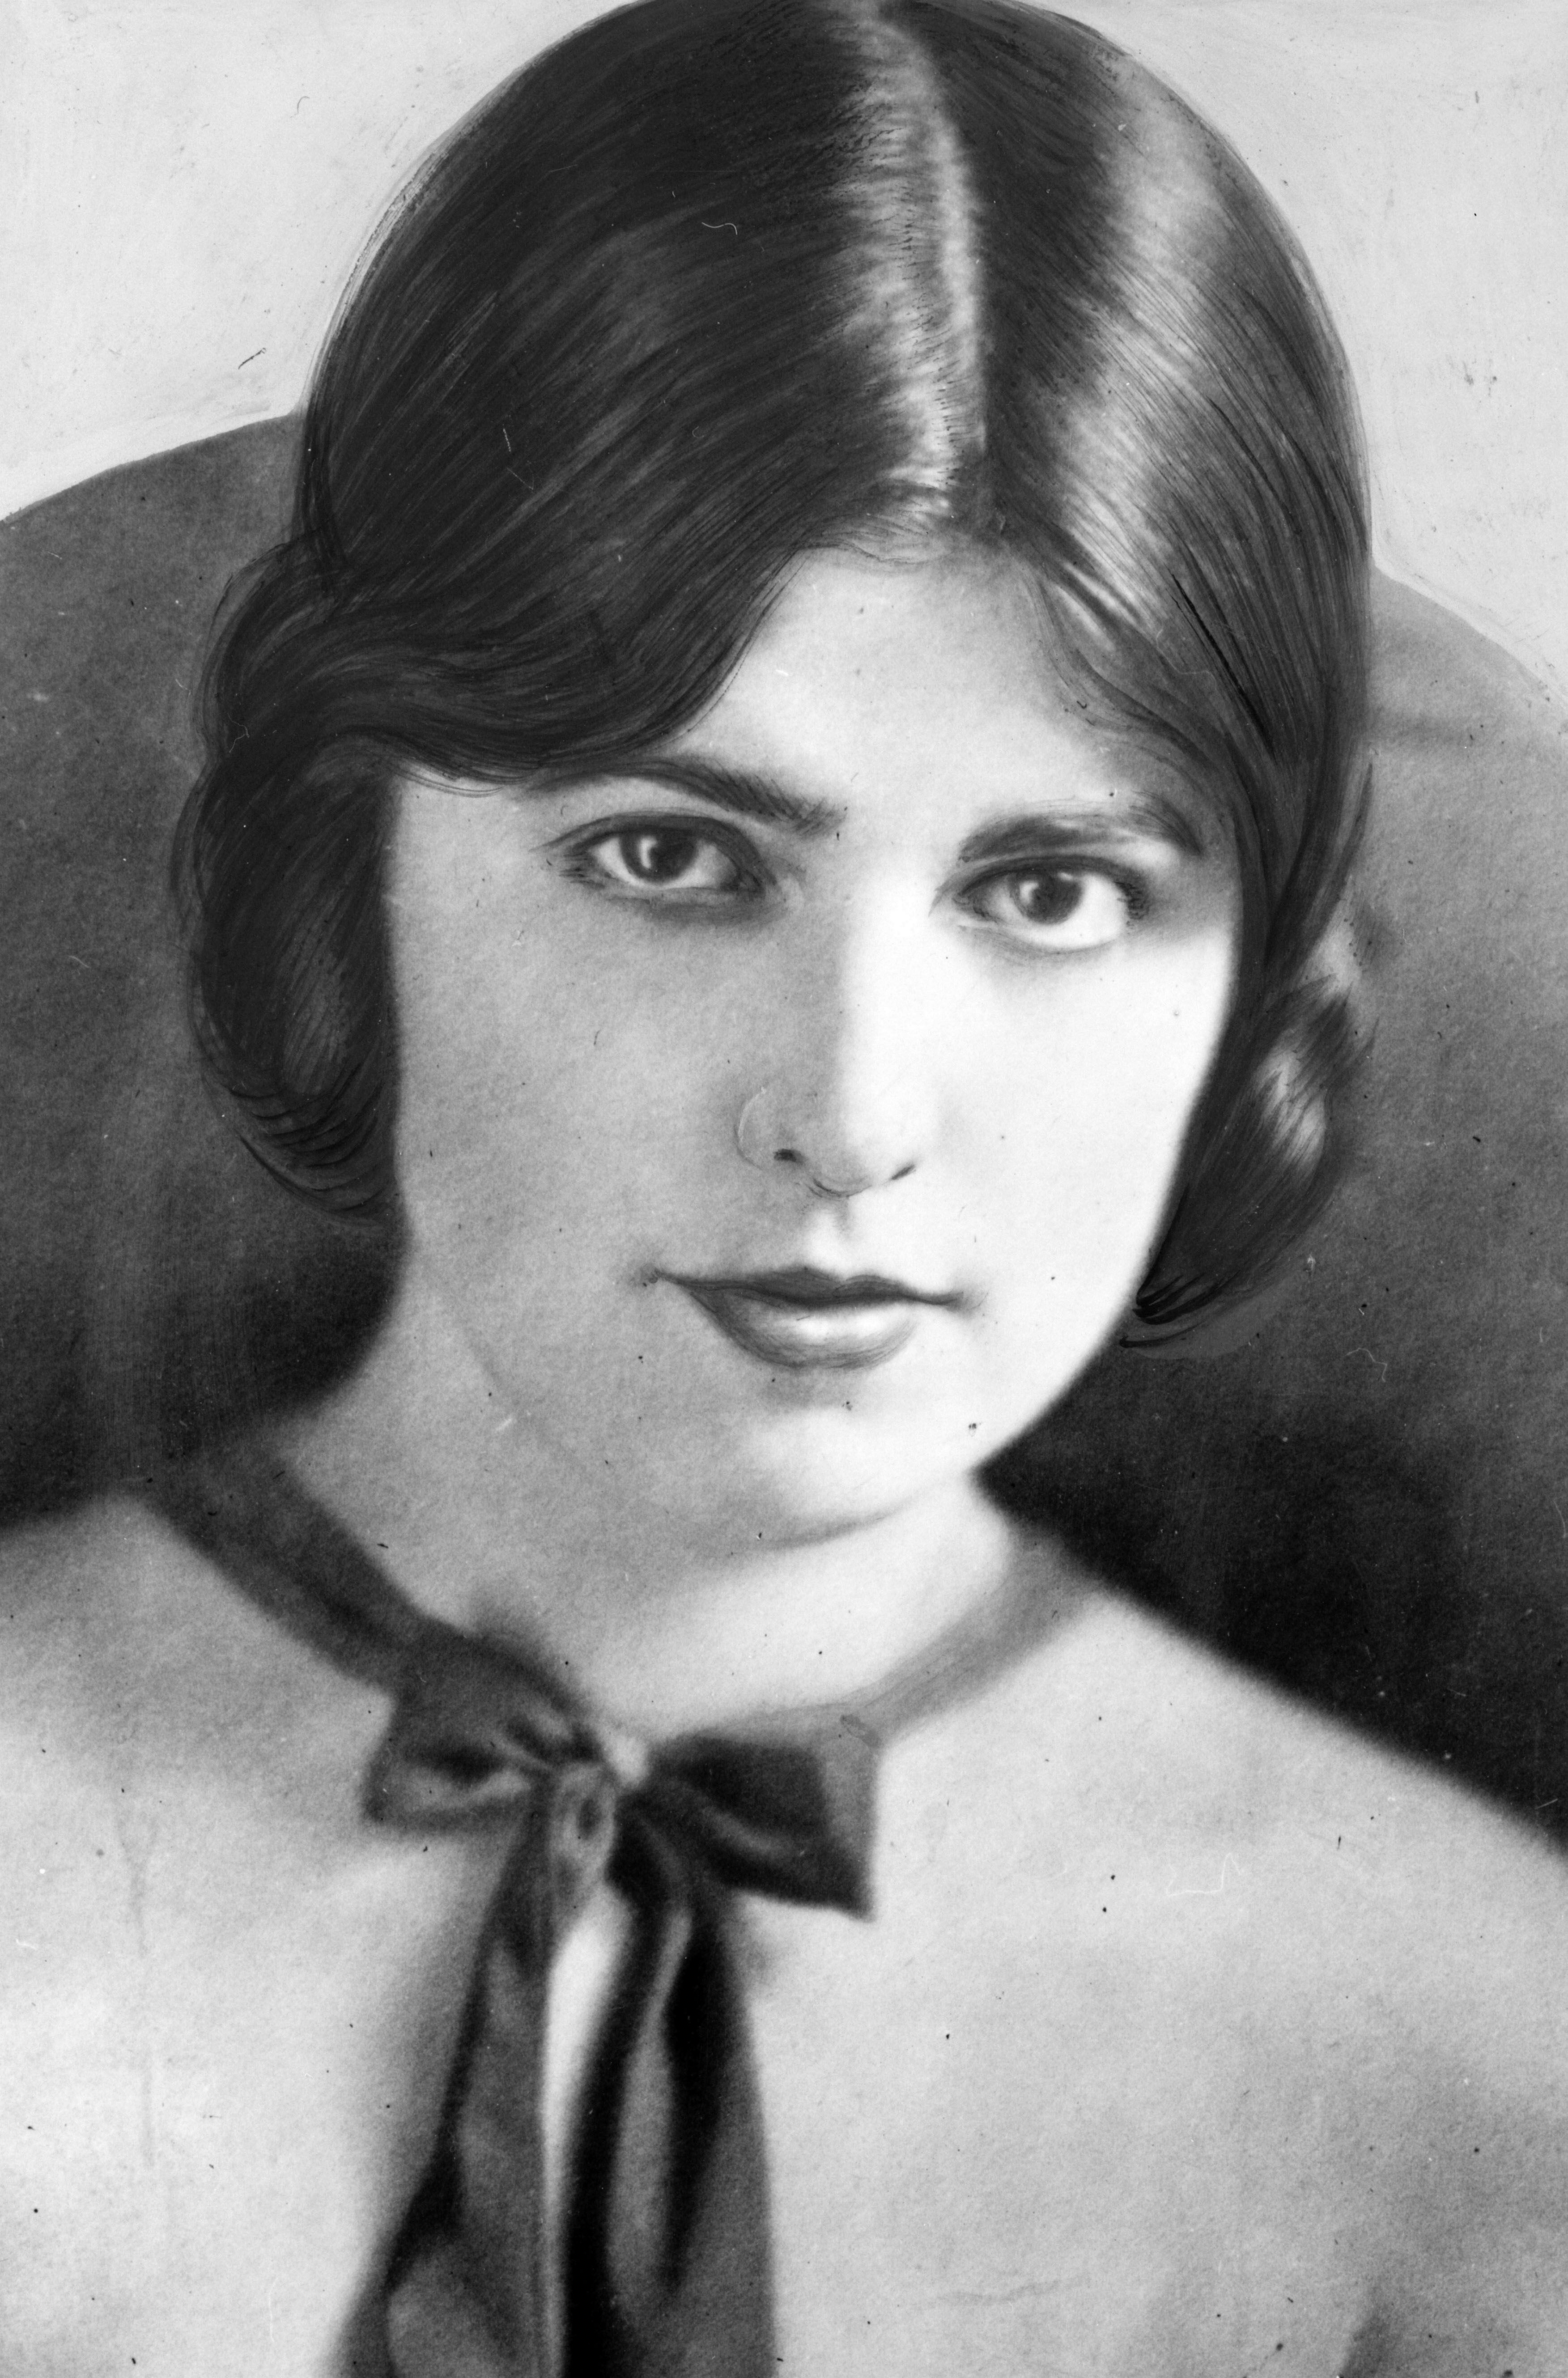 Retrato da modelo e atriz Virginia Rappe (1891-1921), cuja triste morte serviu para alimentar a imprensa sensacionalista e criar um clima de censura em Hollywood. 